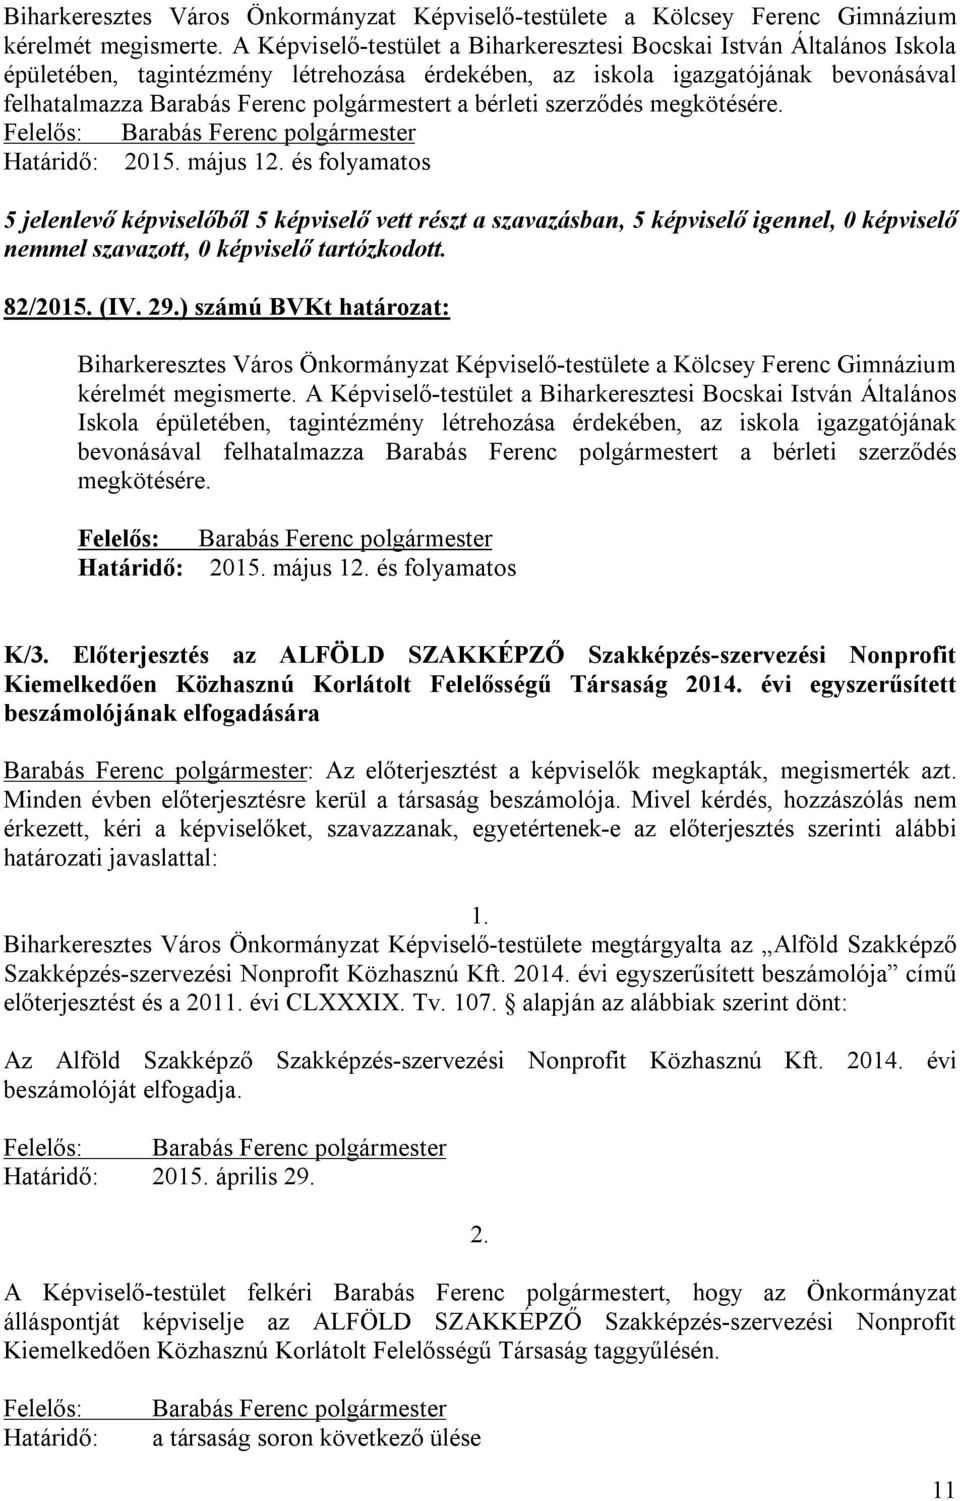 bérleti szerződés megkötésére. Határidő: 2015. május 12. és folyamatos 82/2015. (IV. 29.) számú BVKt :   bérleti szerződés megkötésére. Felelős: Határidő: Barabás Ferenc polgármester 2015. május 12. és folyamatos K/3.